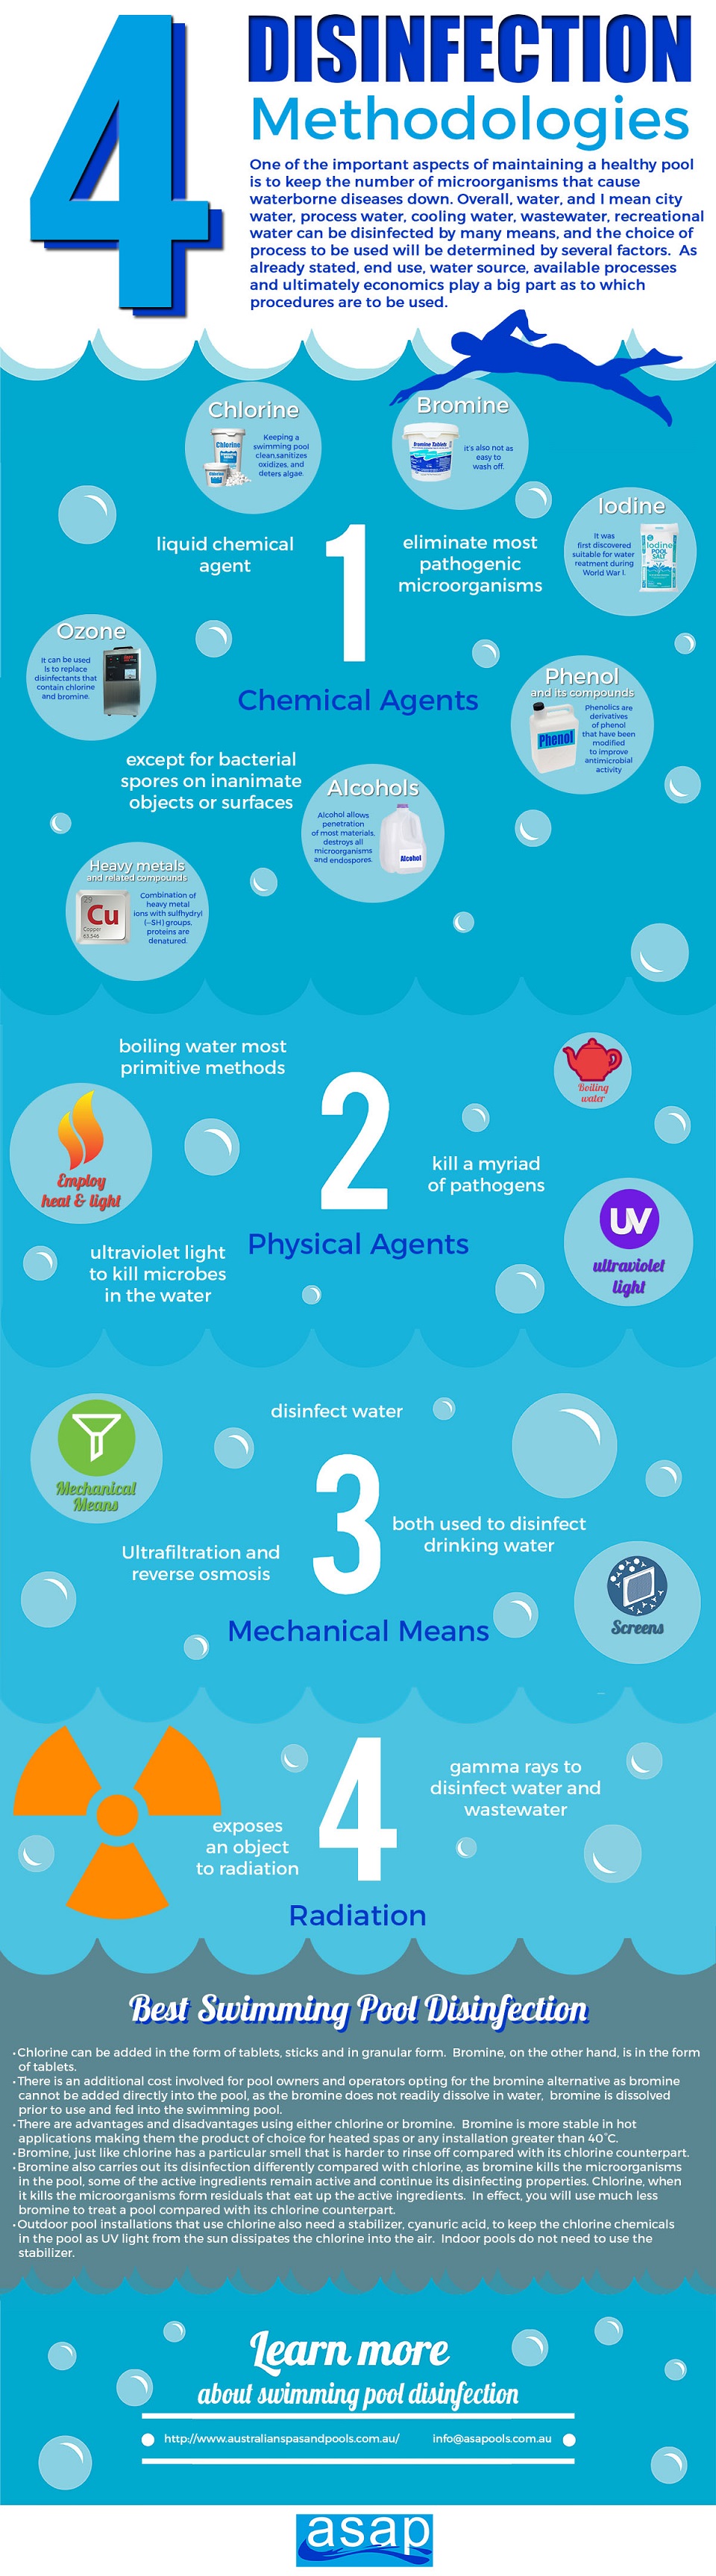 4 Disinfection Methodologies infographic